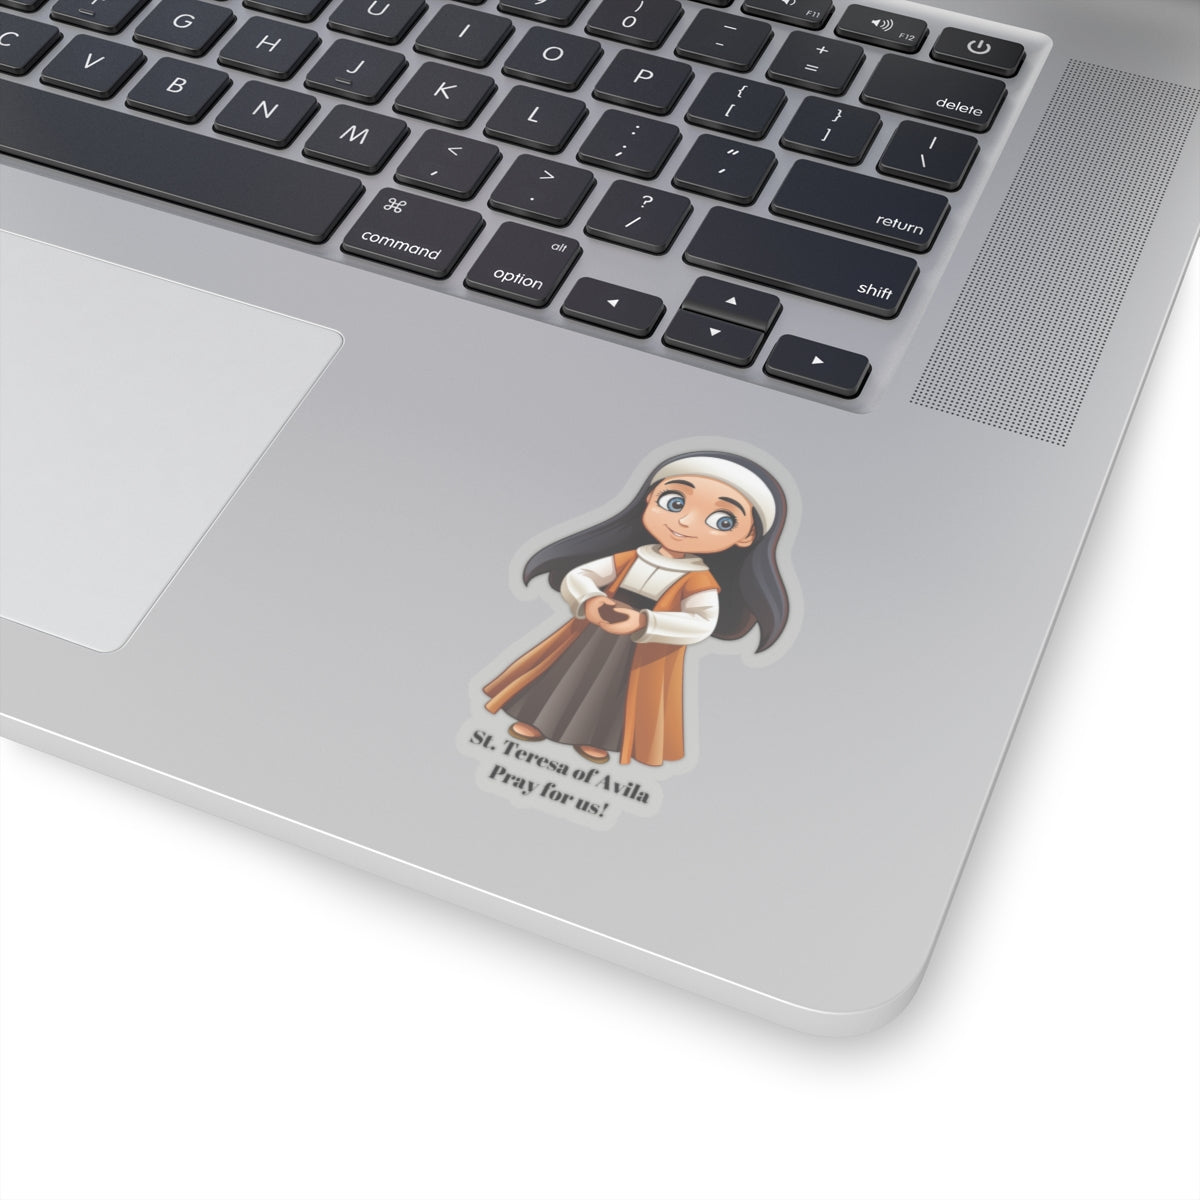 St. Teresa of Avila, sticker